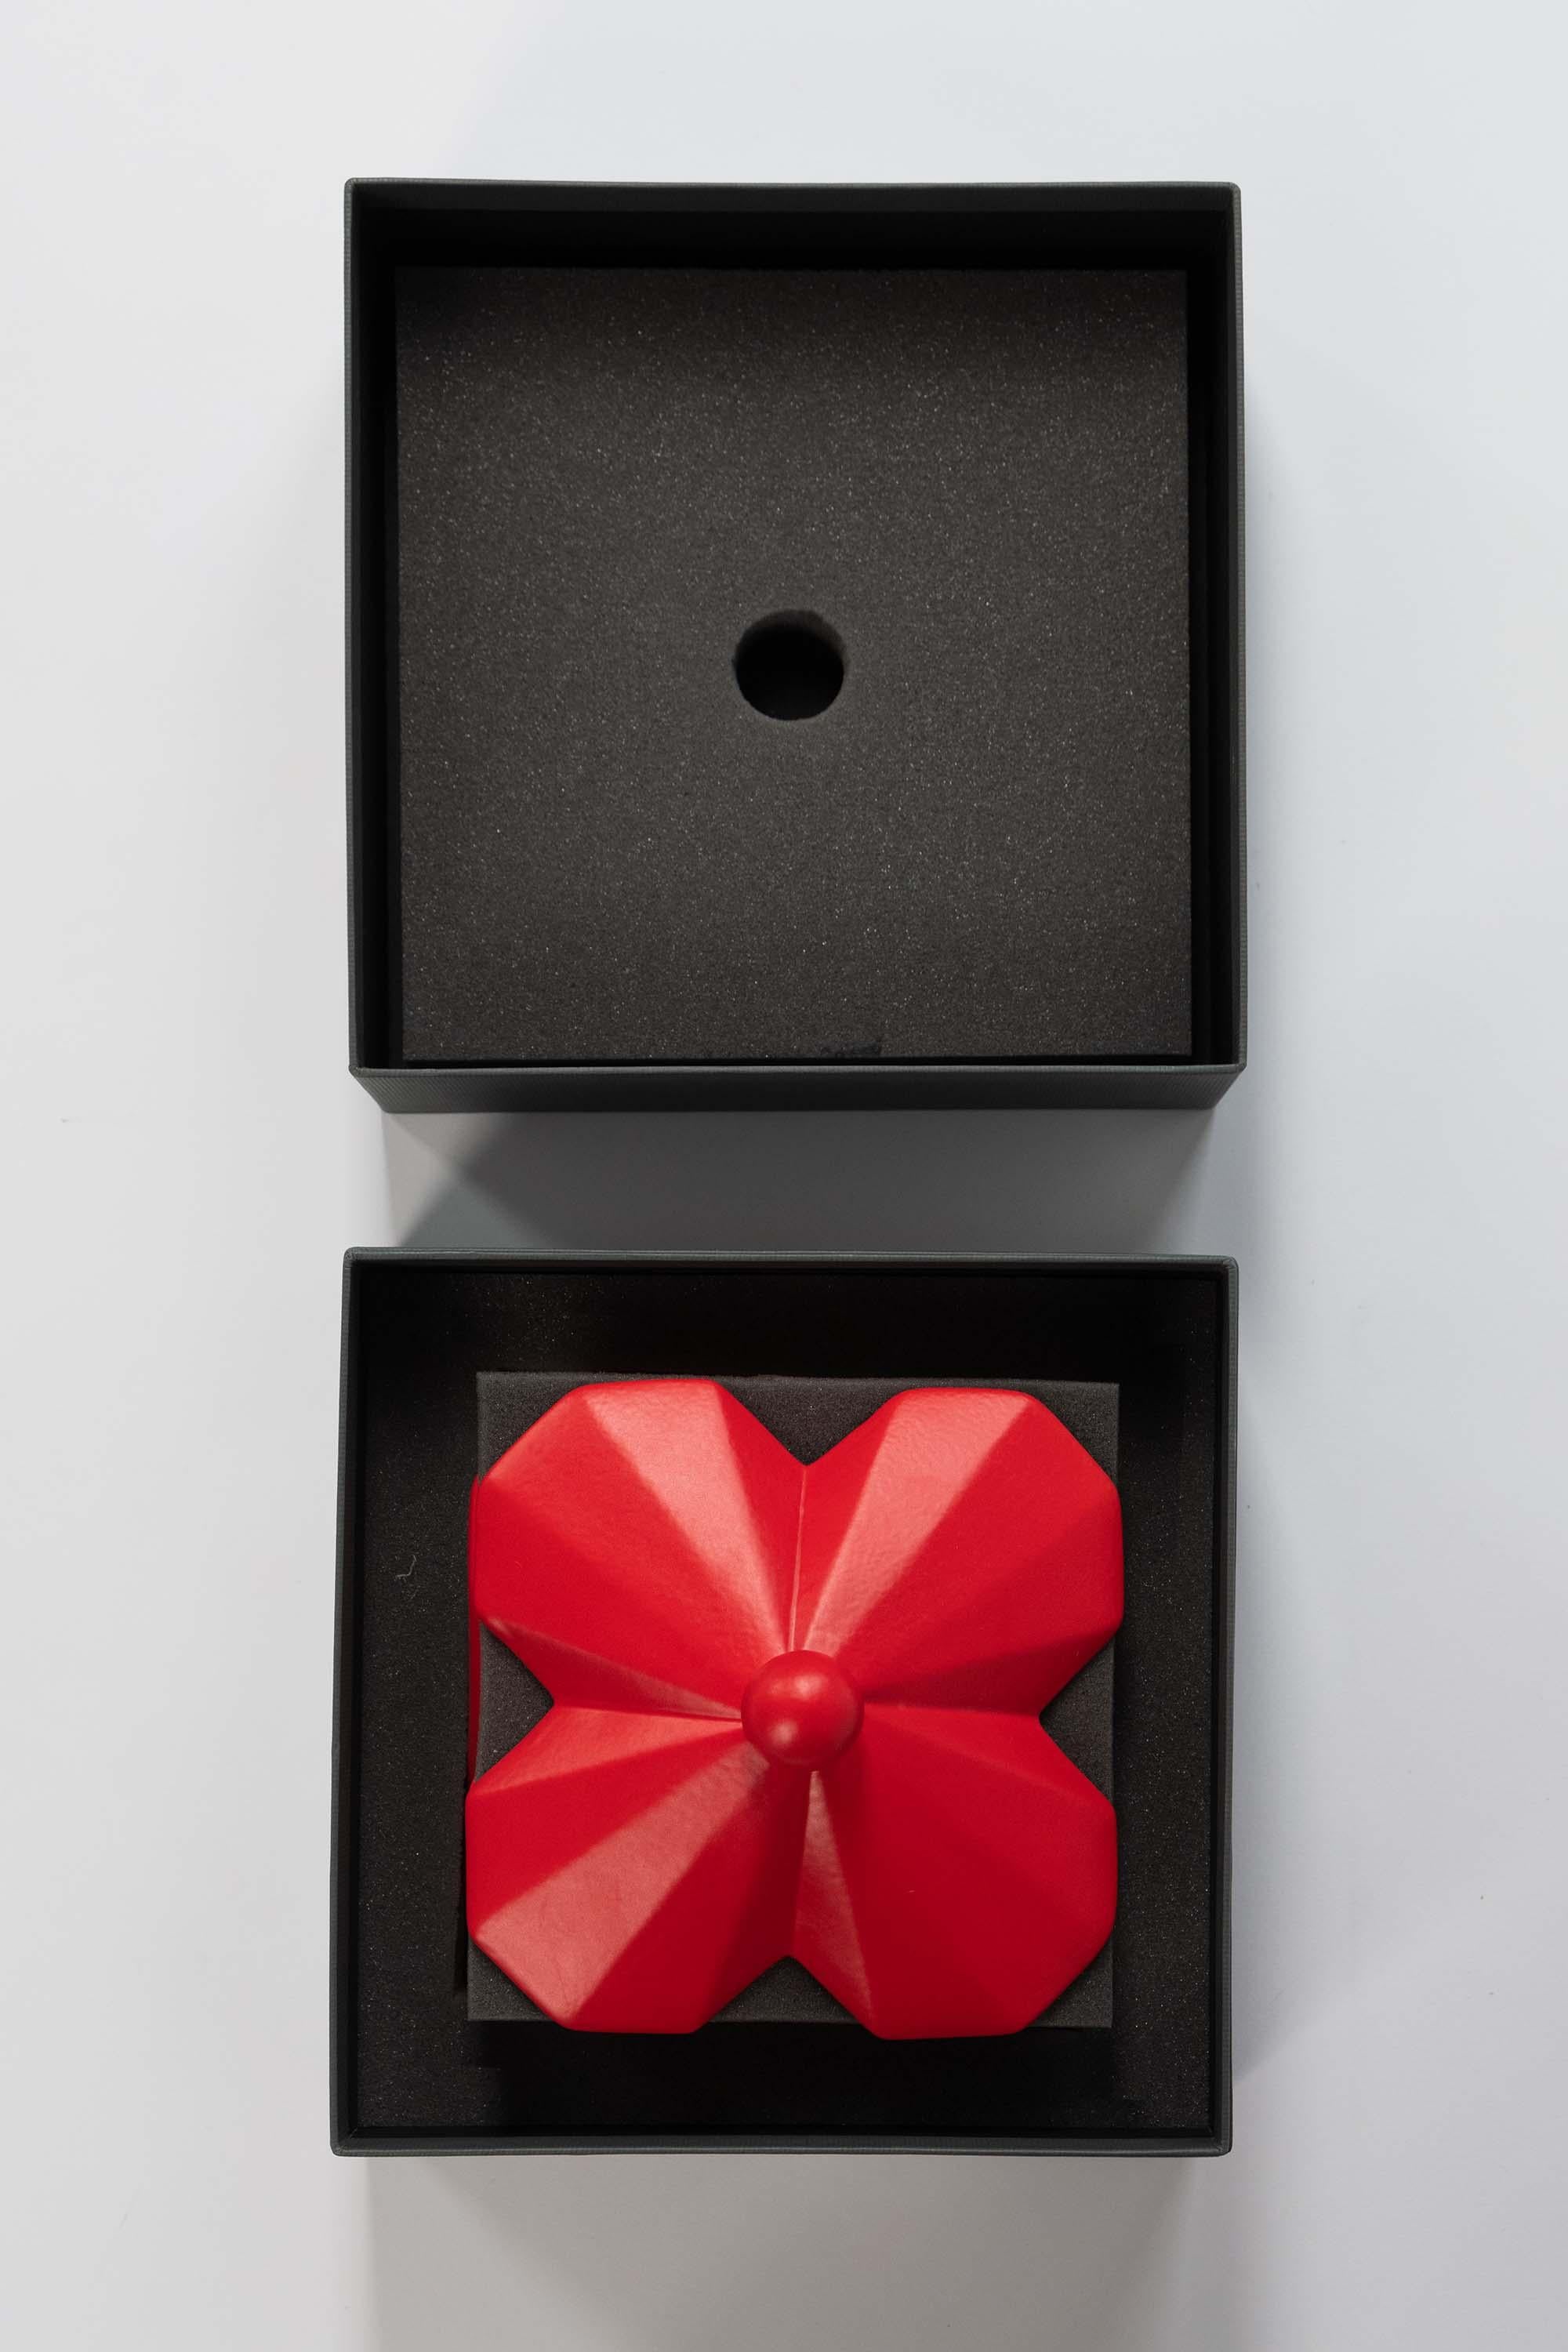 Cast Lara Bohinc Fortress Treasury Box Red Ceramic Geometric Contemporary, in Stock For Sale